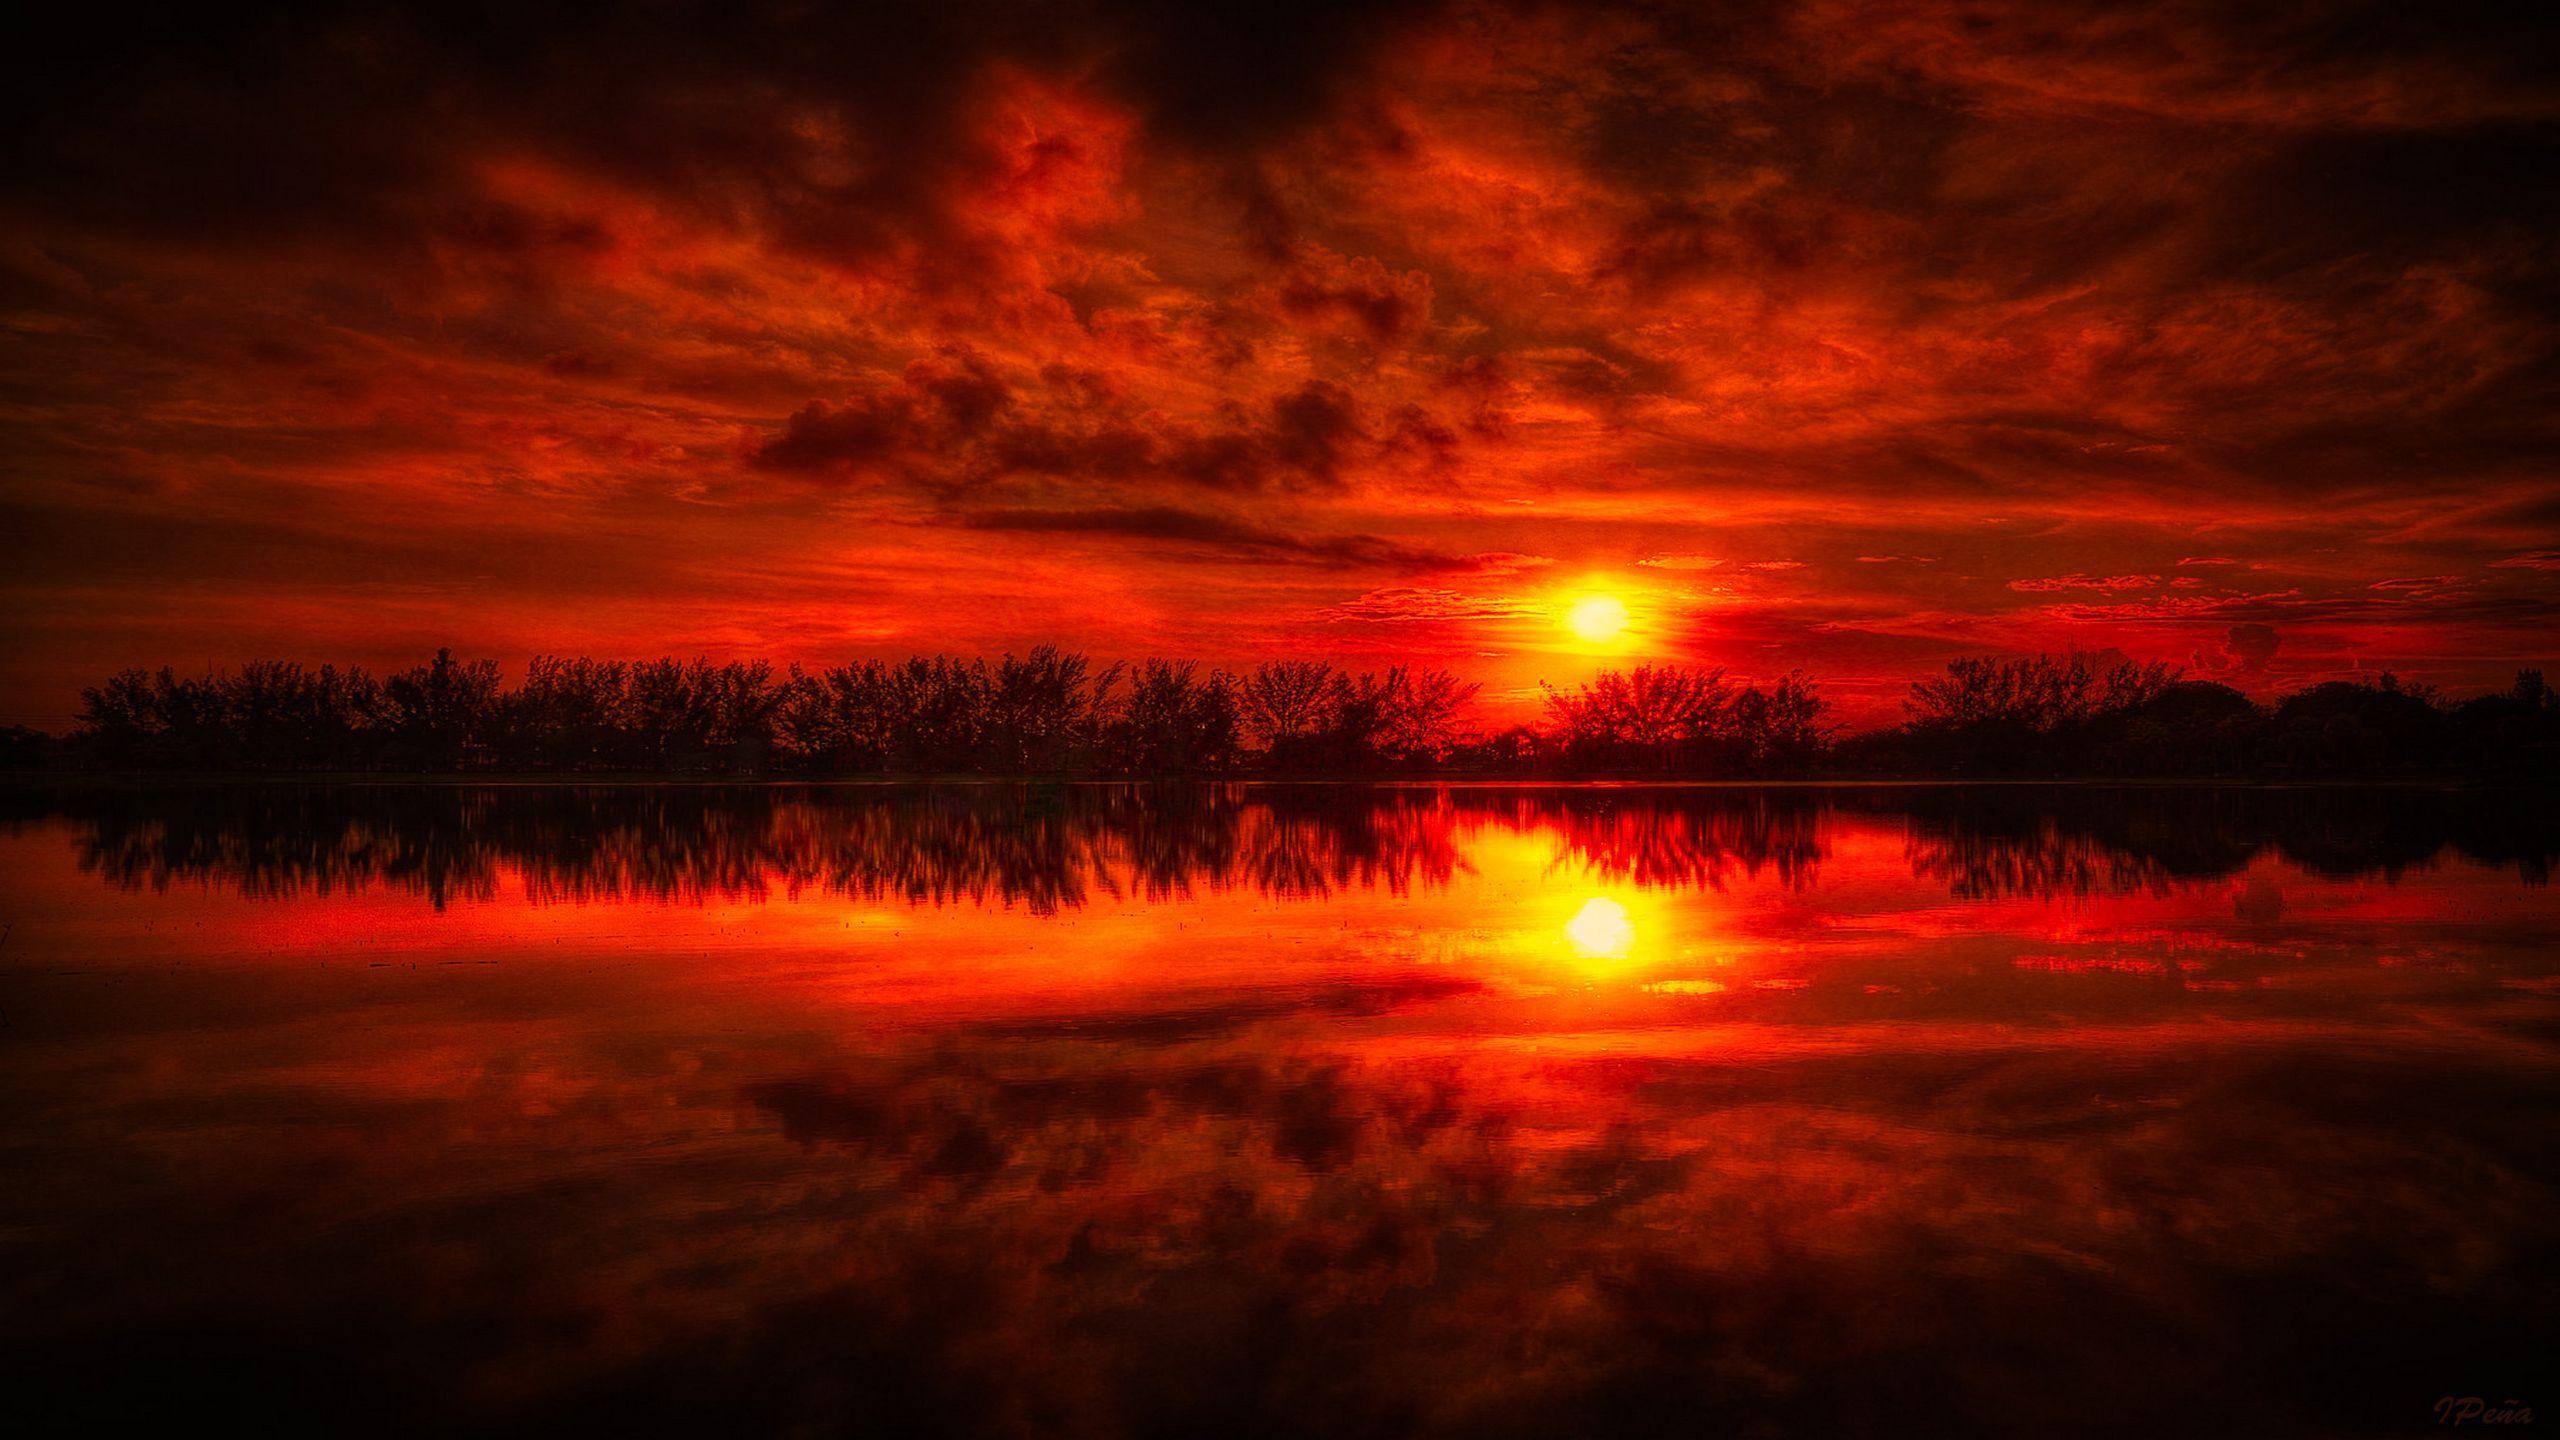 Động cảnh đỏ trời là một sắc đẹp tự nhiên thật kỳ diệu. Hãy tưởng tượng một sắc đỏ ấm áp phủ lên bầu trời khi mặt trời lặn. Hình ảnh này thực sự là một trải nghiệm tuyệt vời cho mắt và tâm hồn. Cùng ngắm nhìn hình ảnh này để cảm nhận sức mạnh của thiên nhiên.